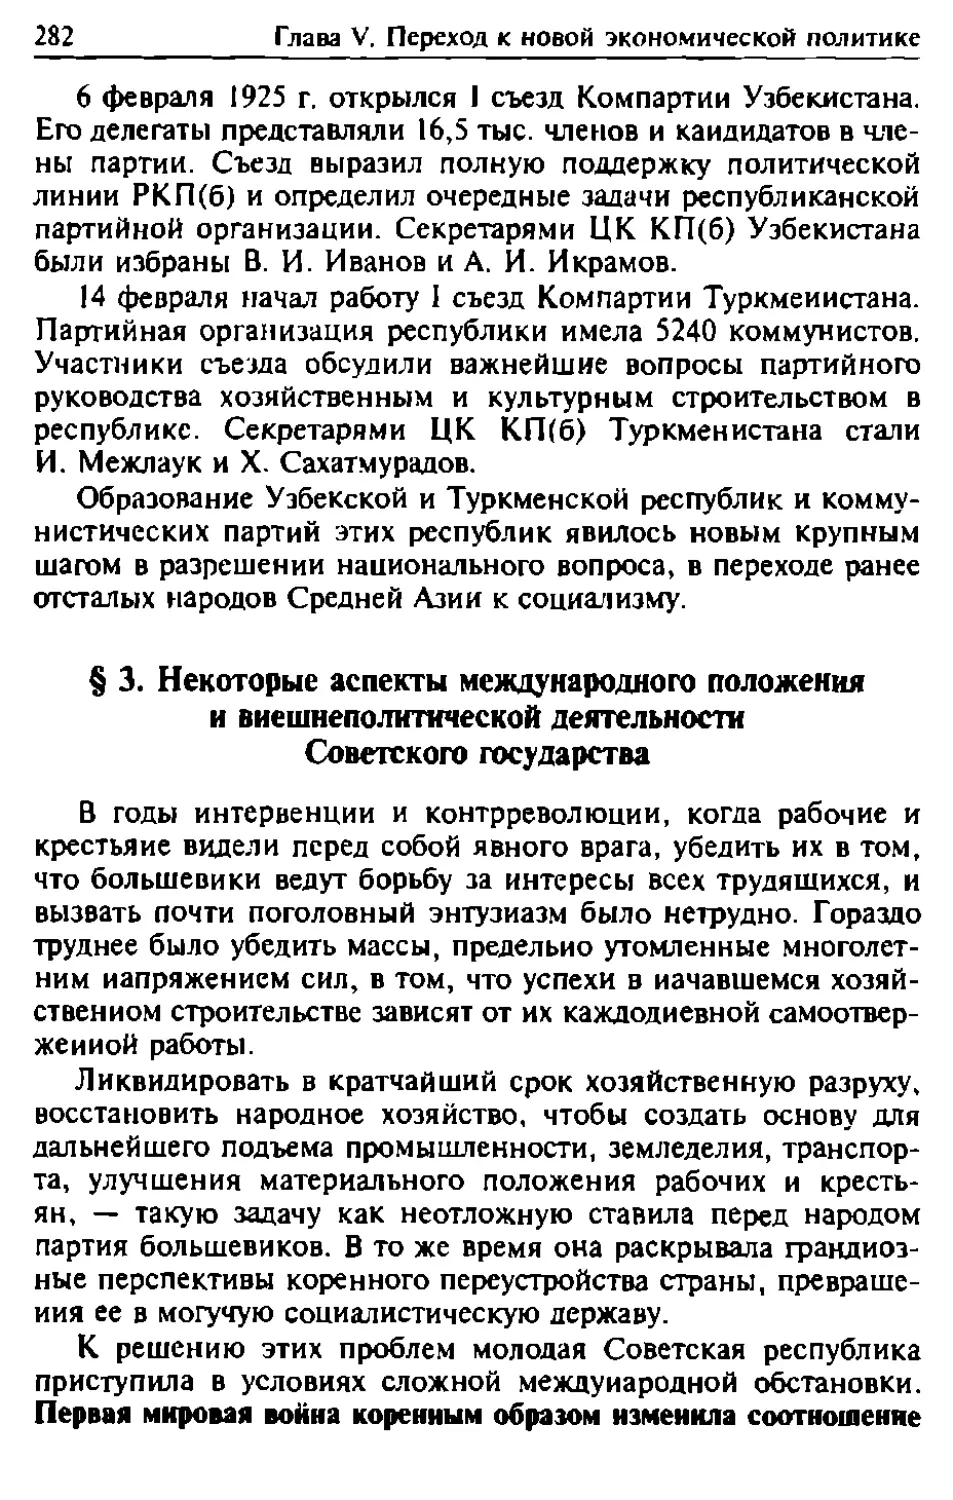 § 3. Некоторые аспекты международного положения и внешнеполитической деятельности Советского государства